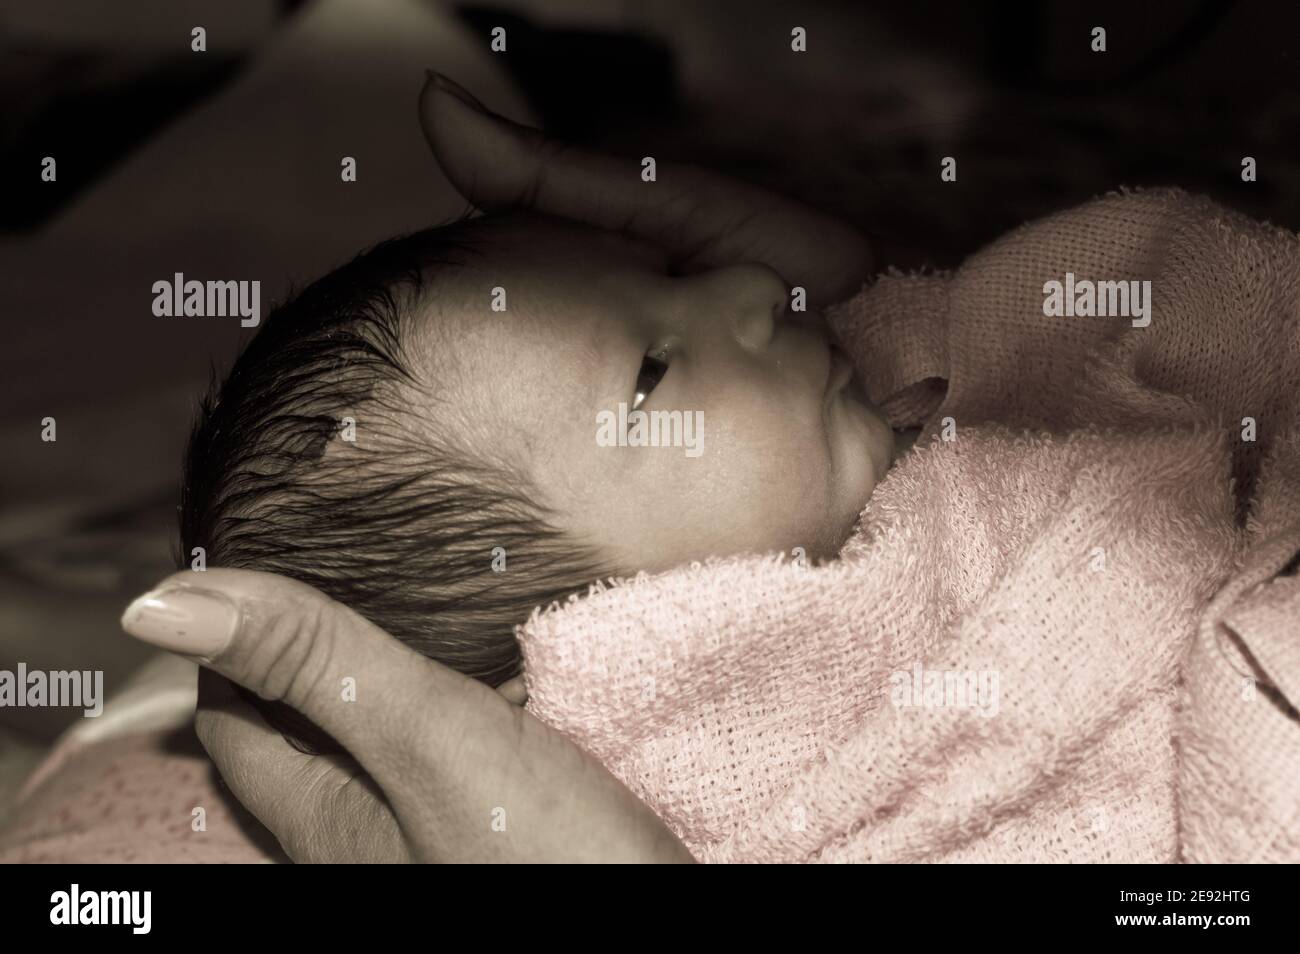 Hermoso recién nacido niño closeup (6 días de edad) acostado el regazo de madre en el hospital prenatal. Niño envuelto en manta para bebé de abrigo) sonriendo y mira